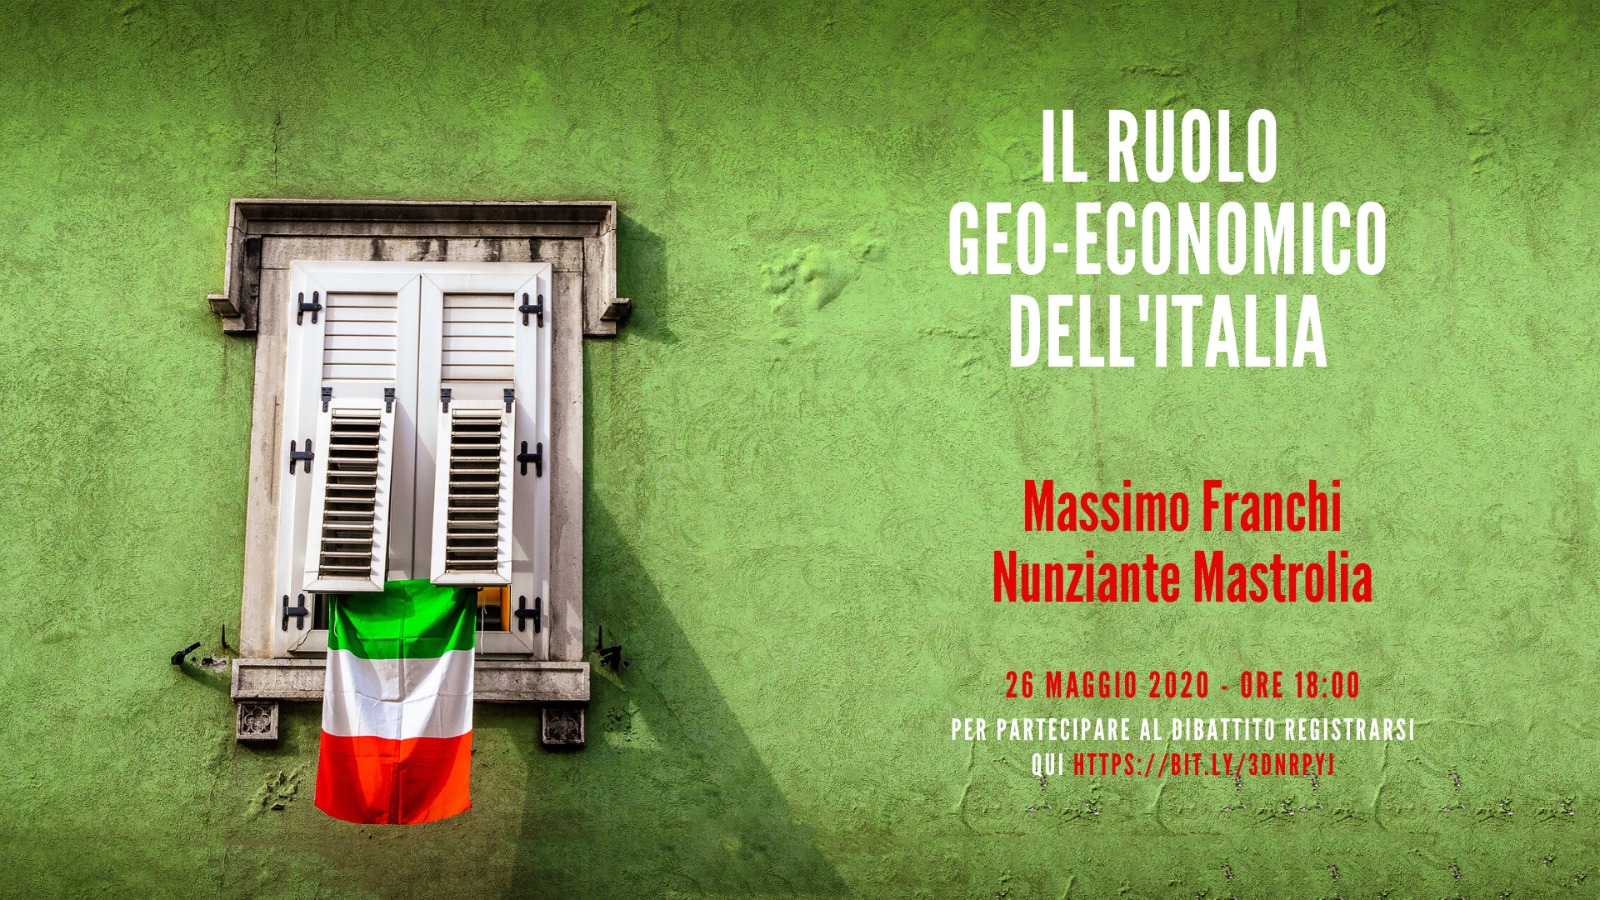 IL RUOLO GEO ECONOMICO DELL'ITALIA